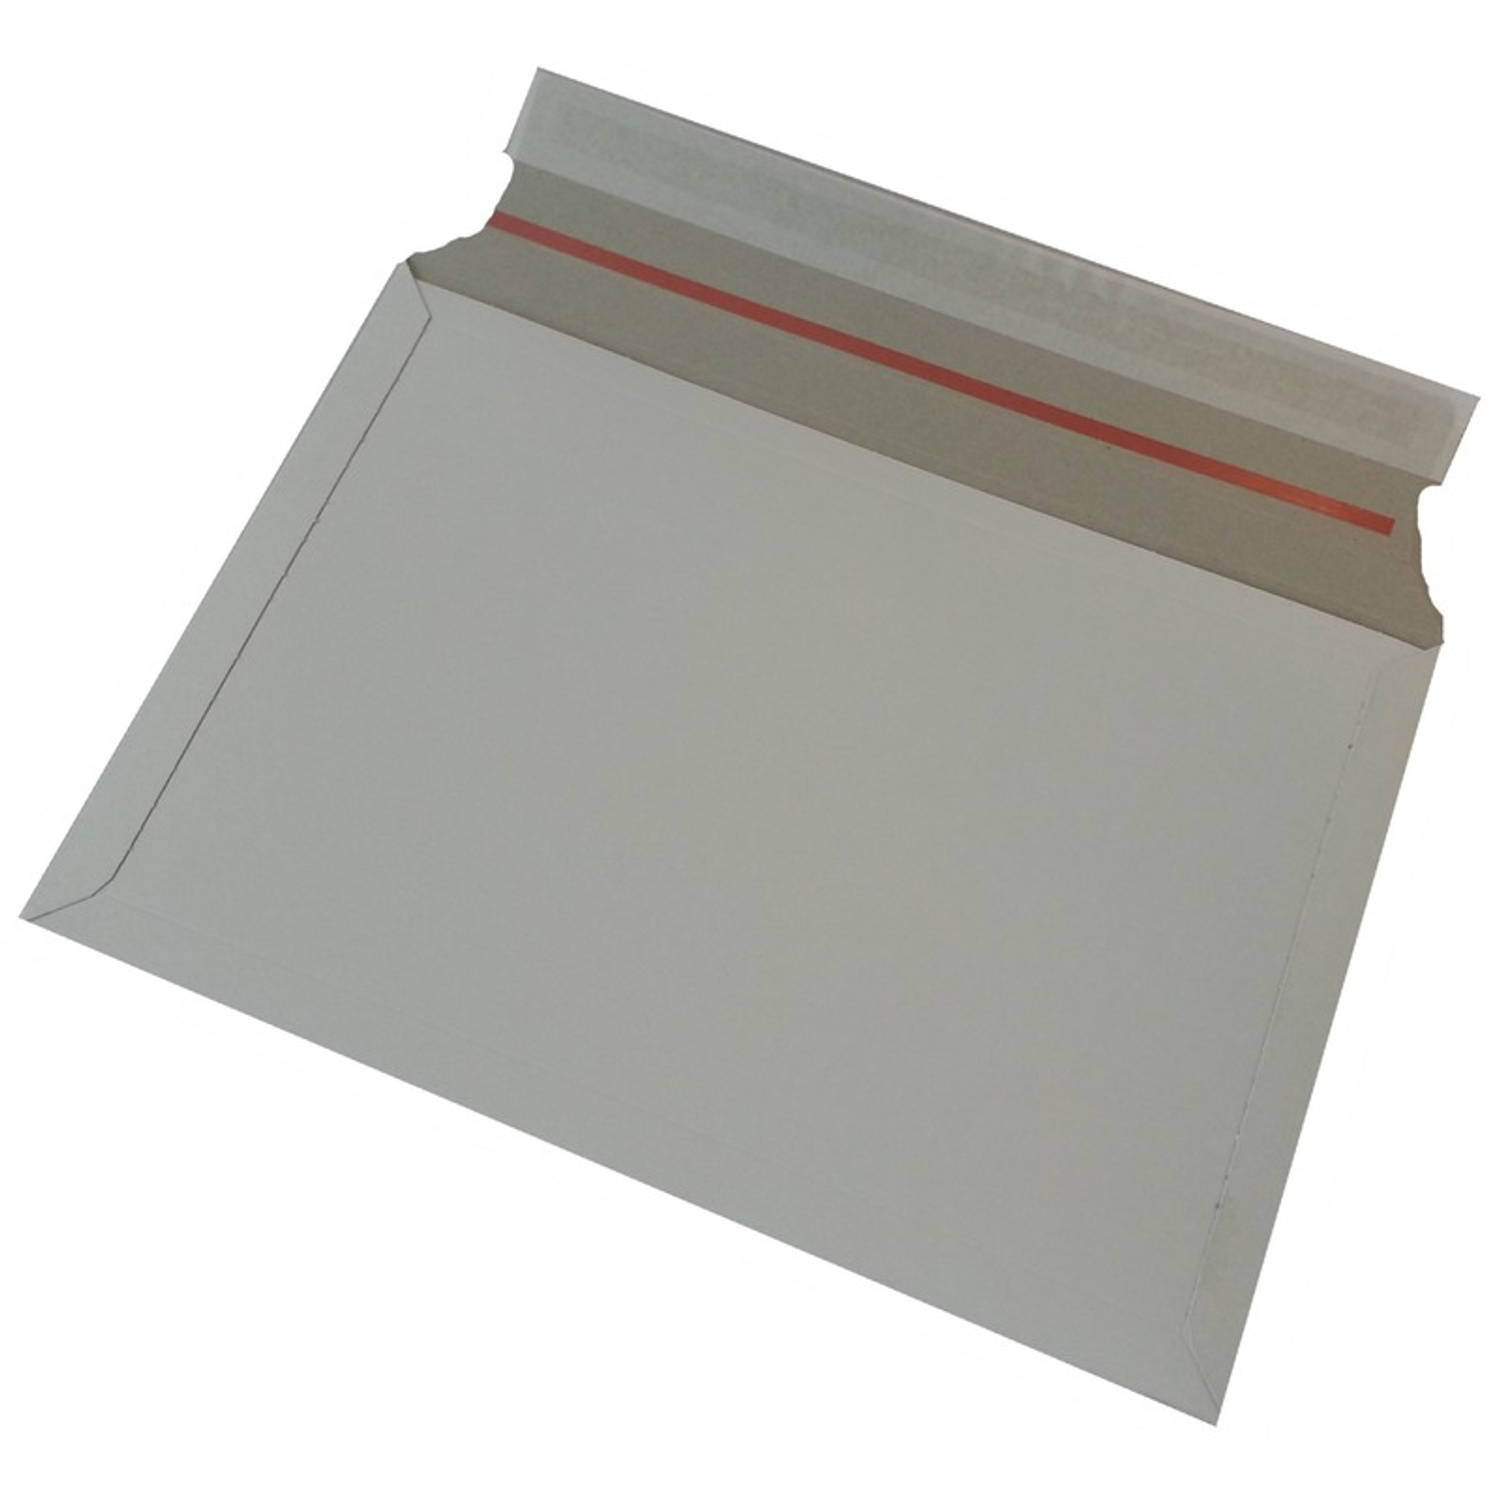 30x Witte kartonnen verzendenveloppen 38 x 26 cm Enveloppen verzendmateriaal-verpakkingen